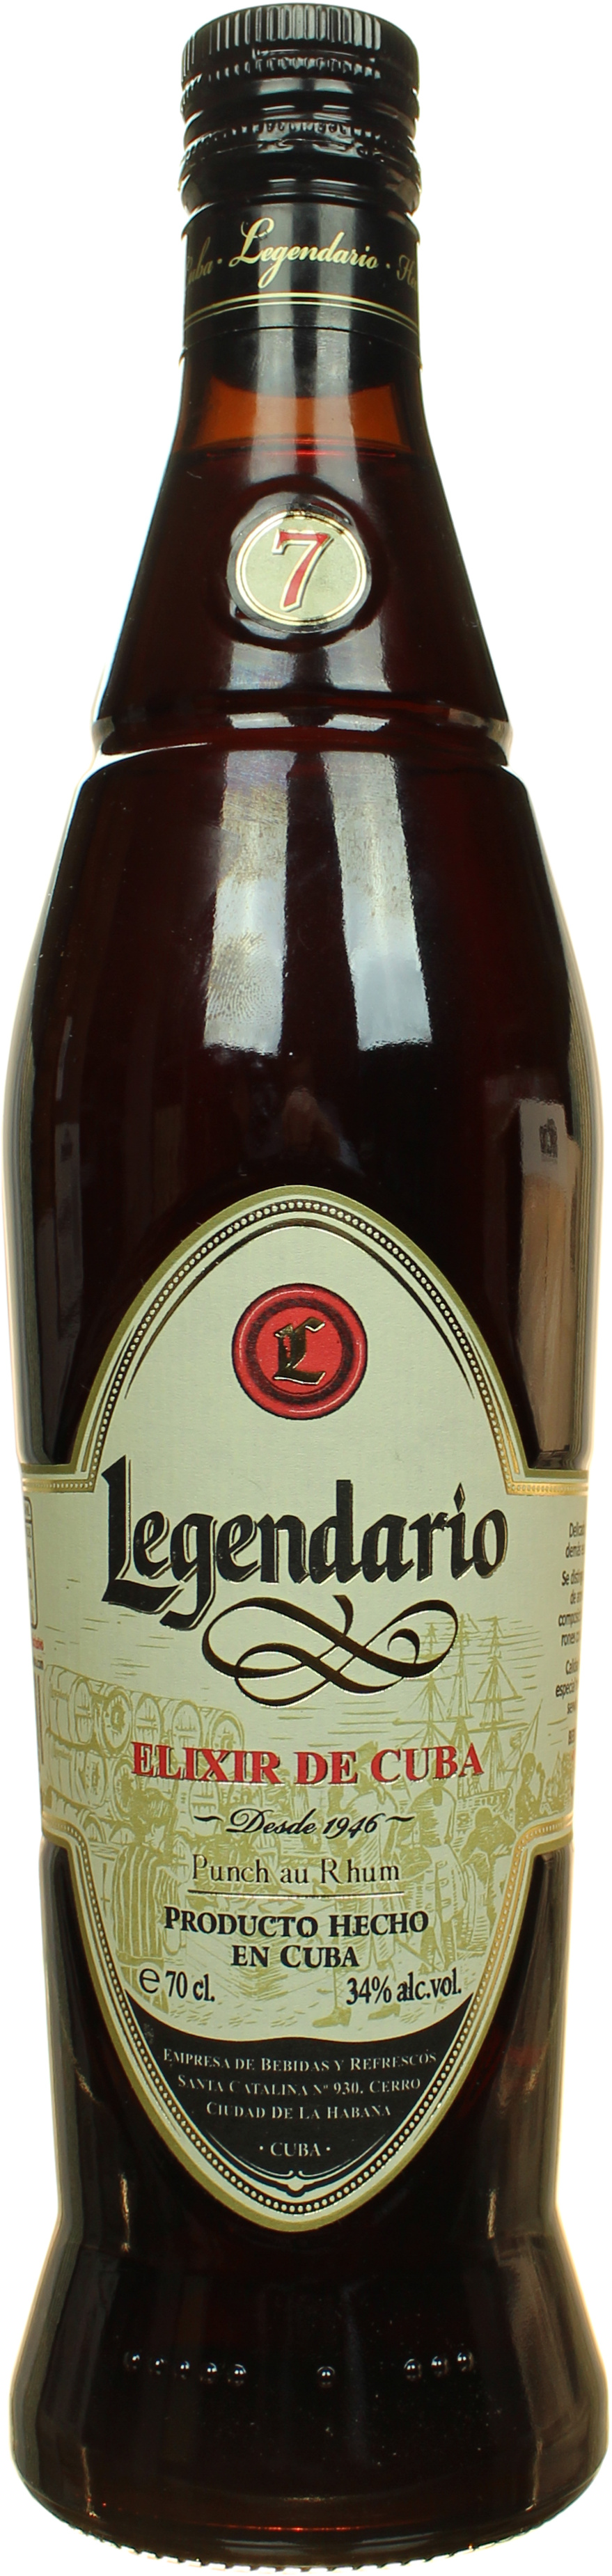 Legendario Elixir de Cuba 34% 0,7l